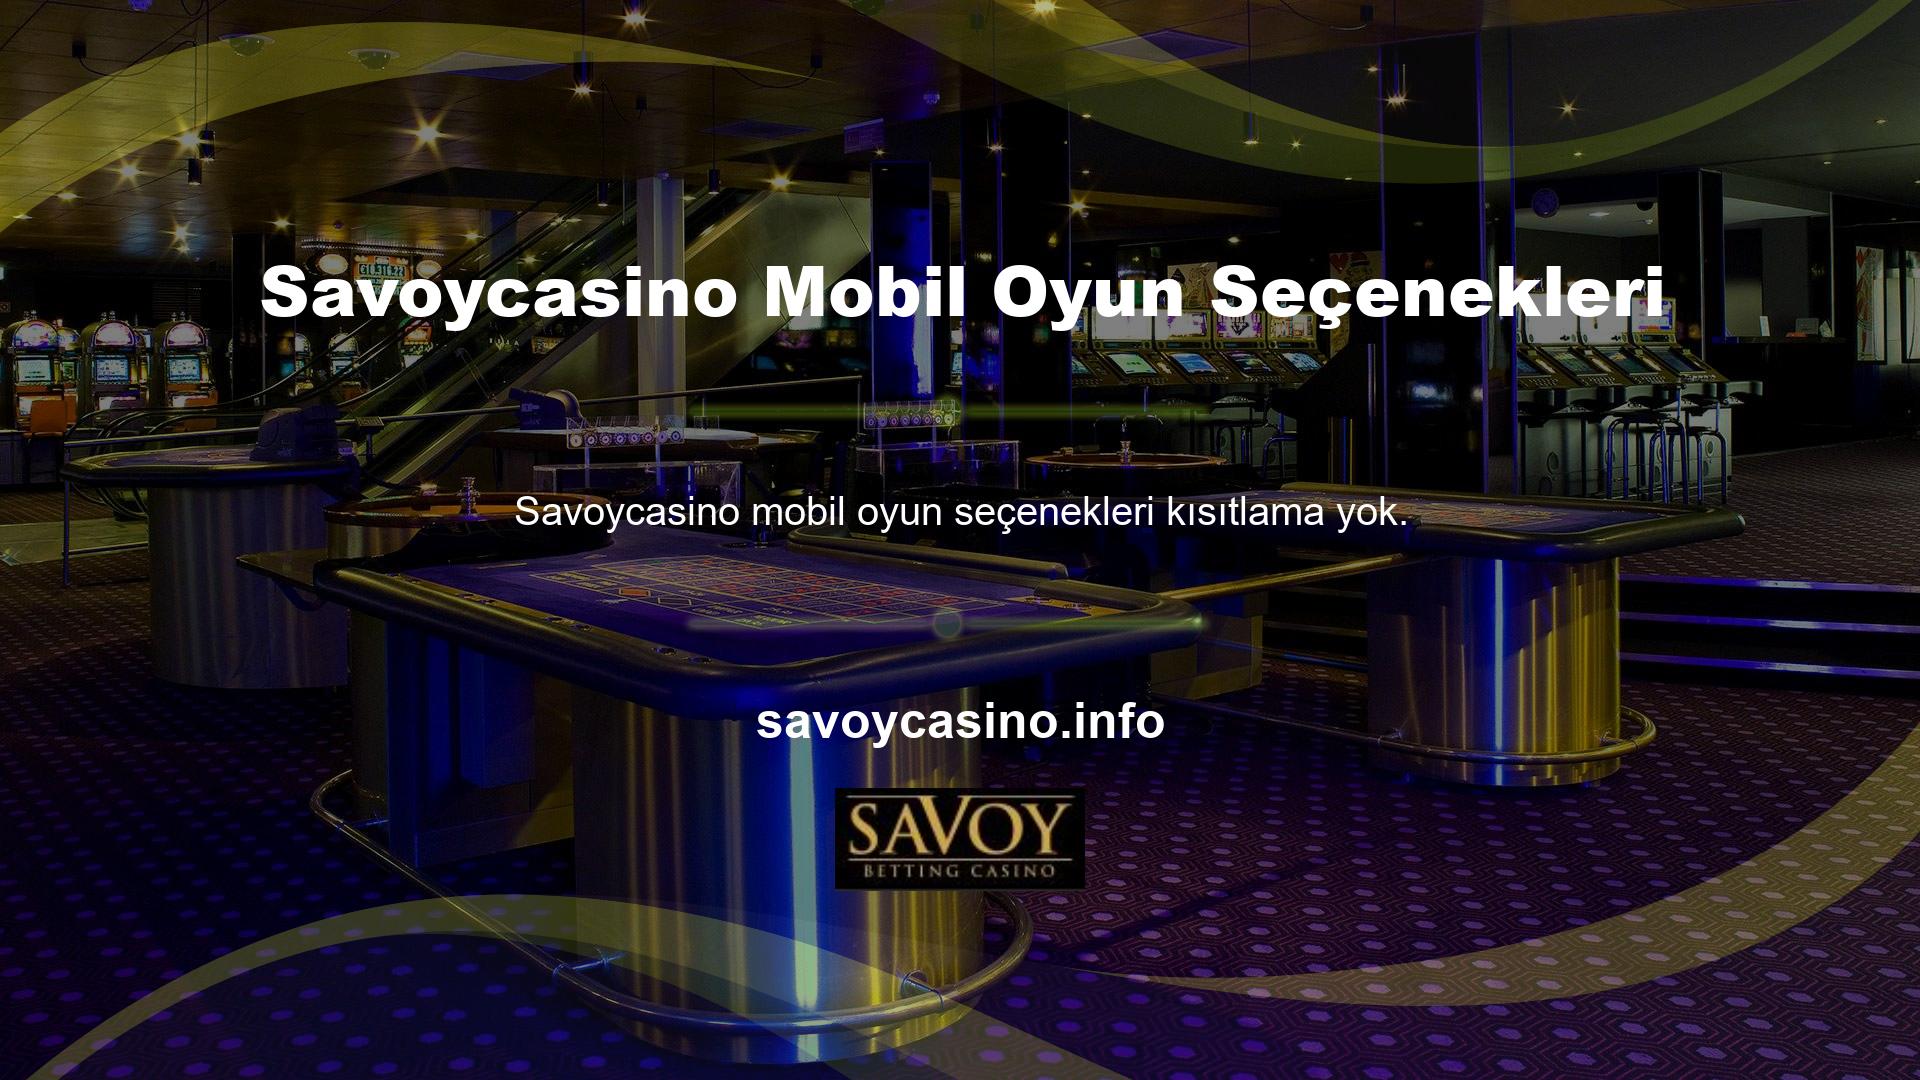 Savoycasino web sitesine (yeni Savoycasino giriş adresi) giriş yaparak cep telefonunuzda sunulan tüm oyun seçeneklerini oynayabilirsiniz